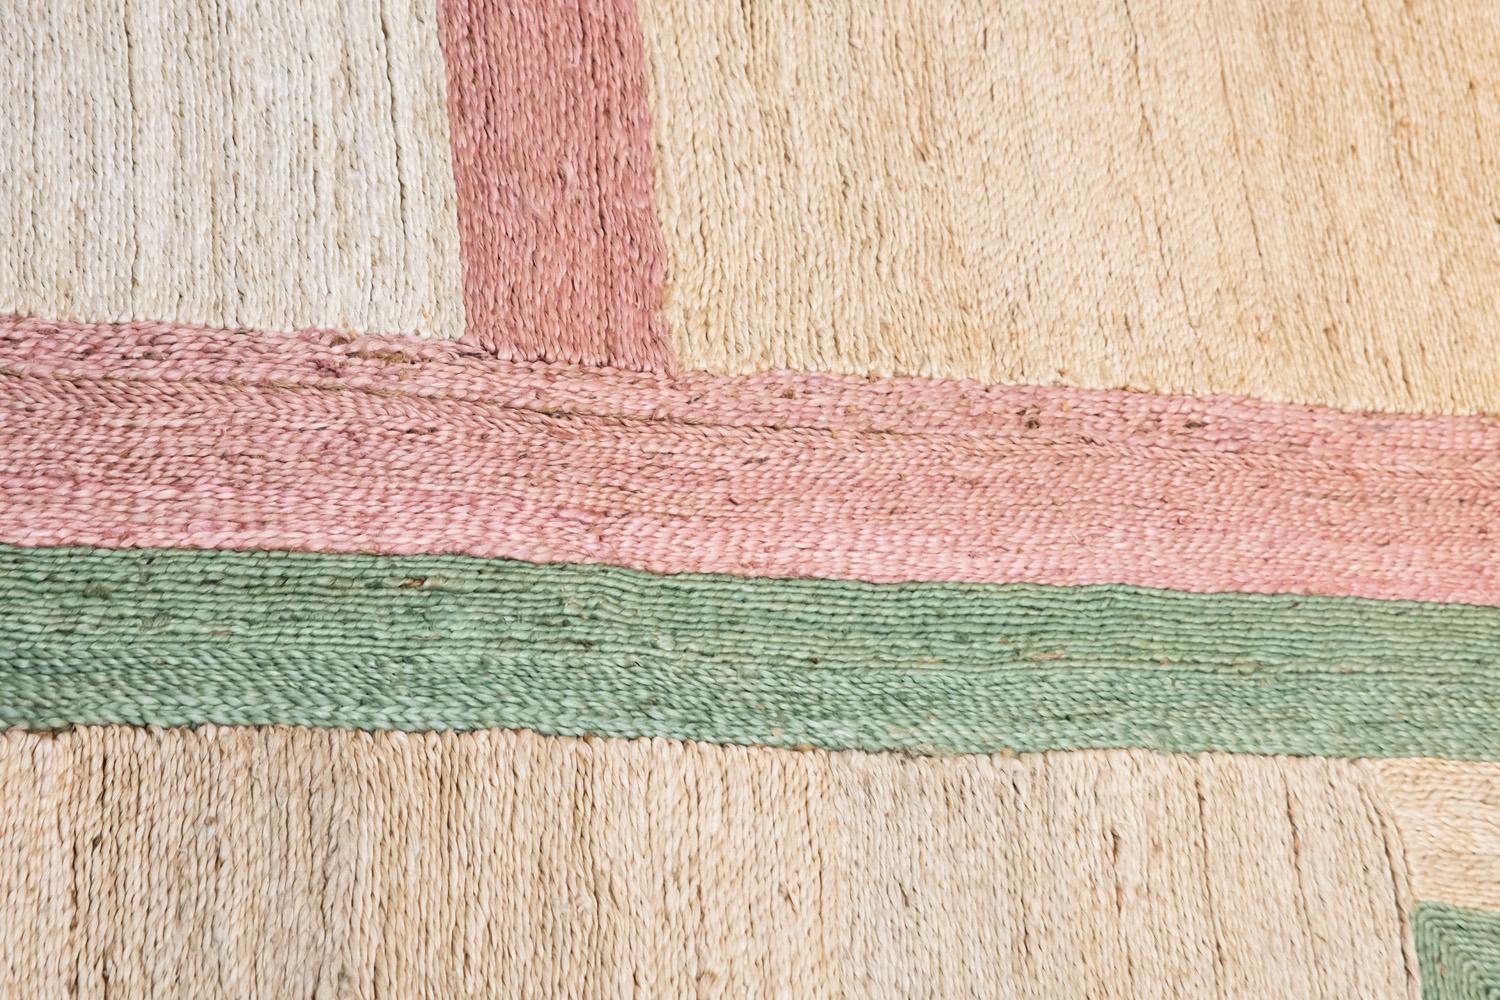 Ce tapis de jute a été tissé à la main de manière éthique dans les meilleurs fils de jute par des artisans en Inde, en utilisant une technique de tissage traditionnelle de cette région.
Comme il est tissé à la main dans des fils de fibres